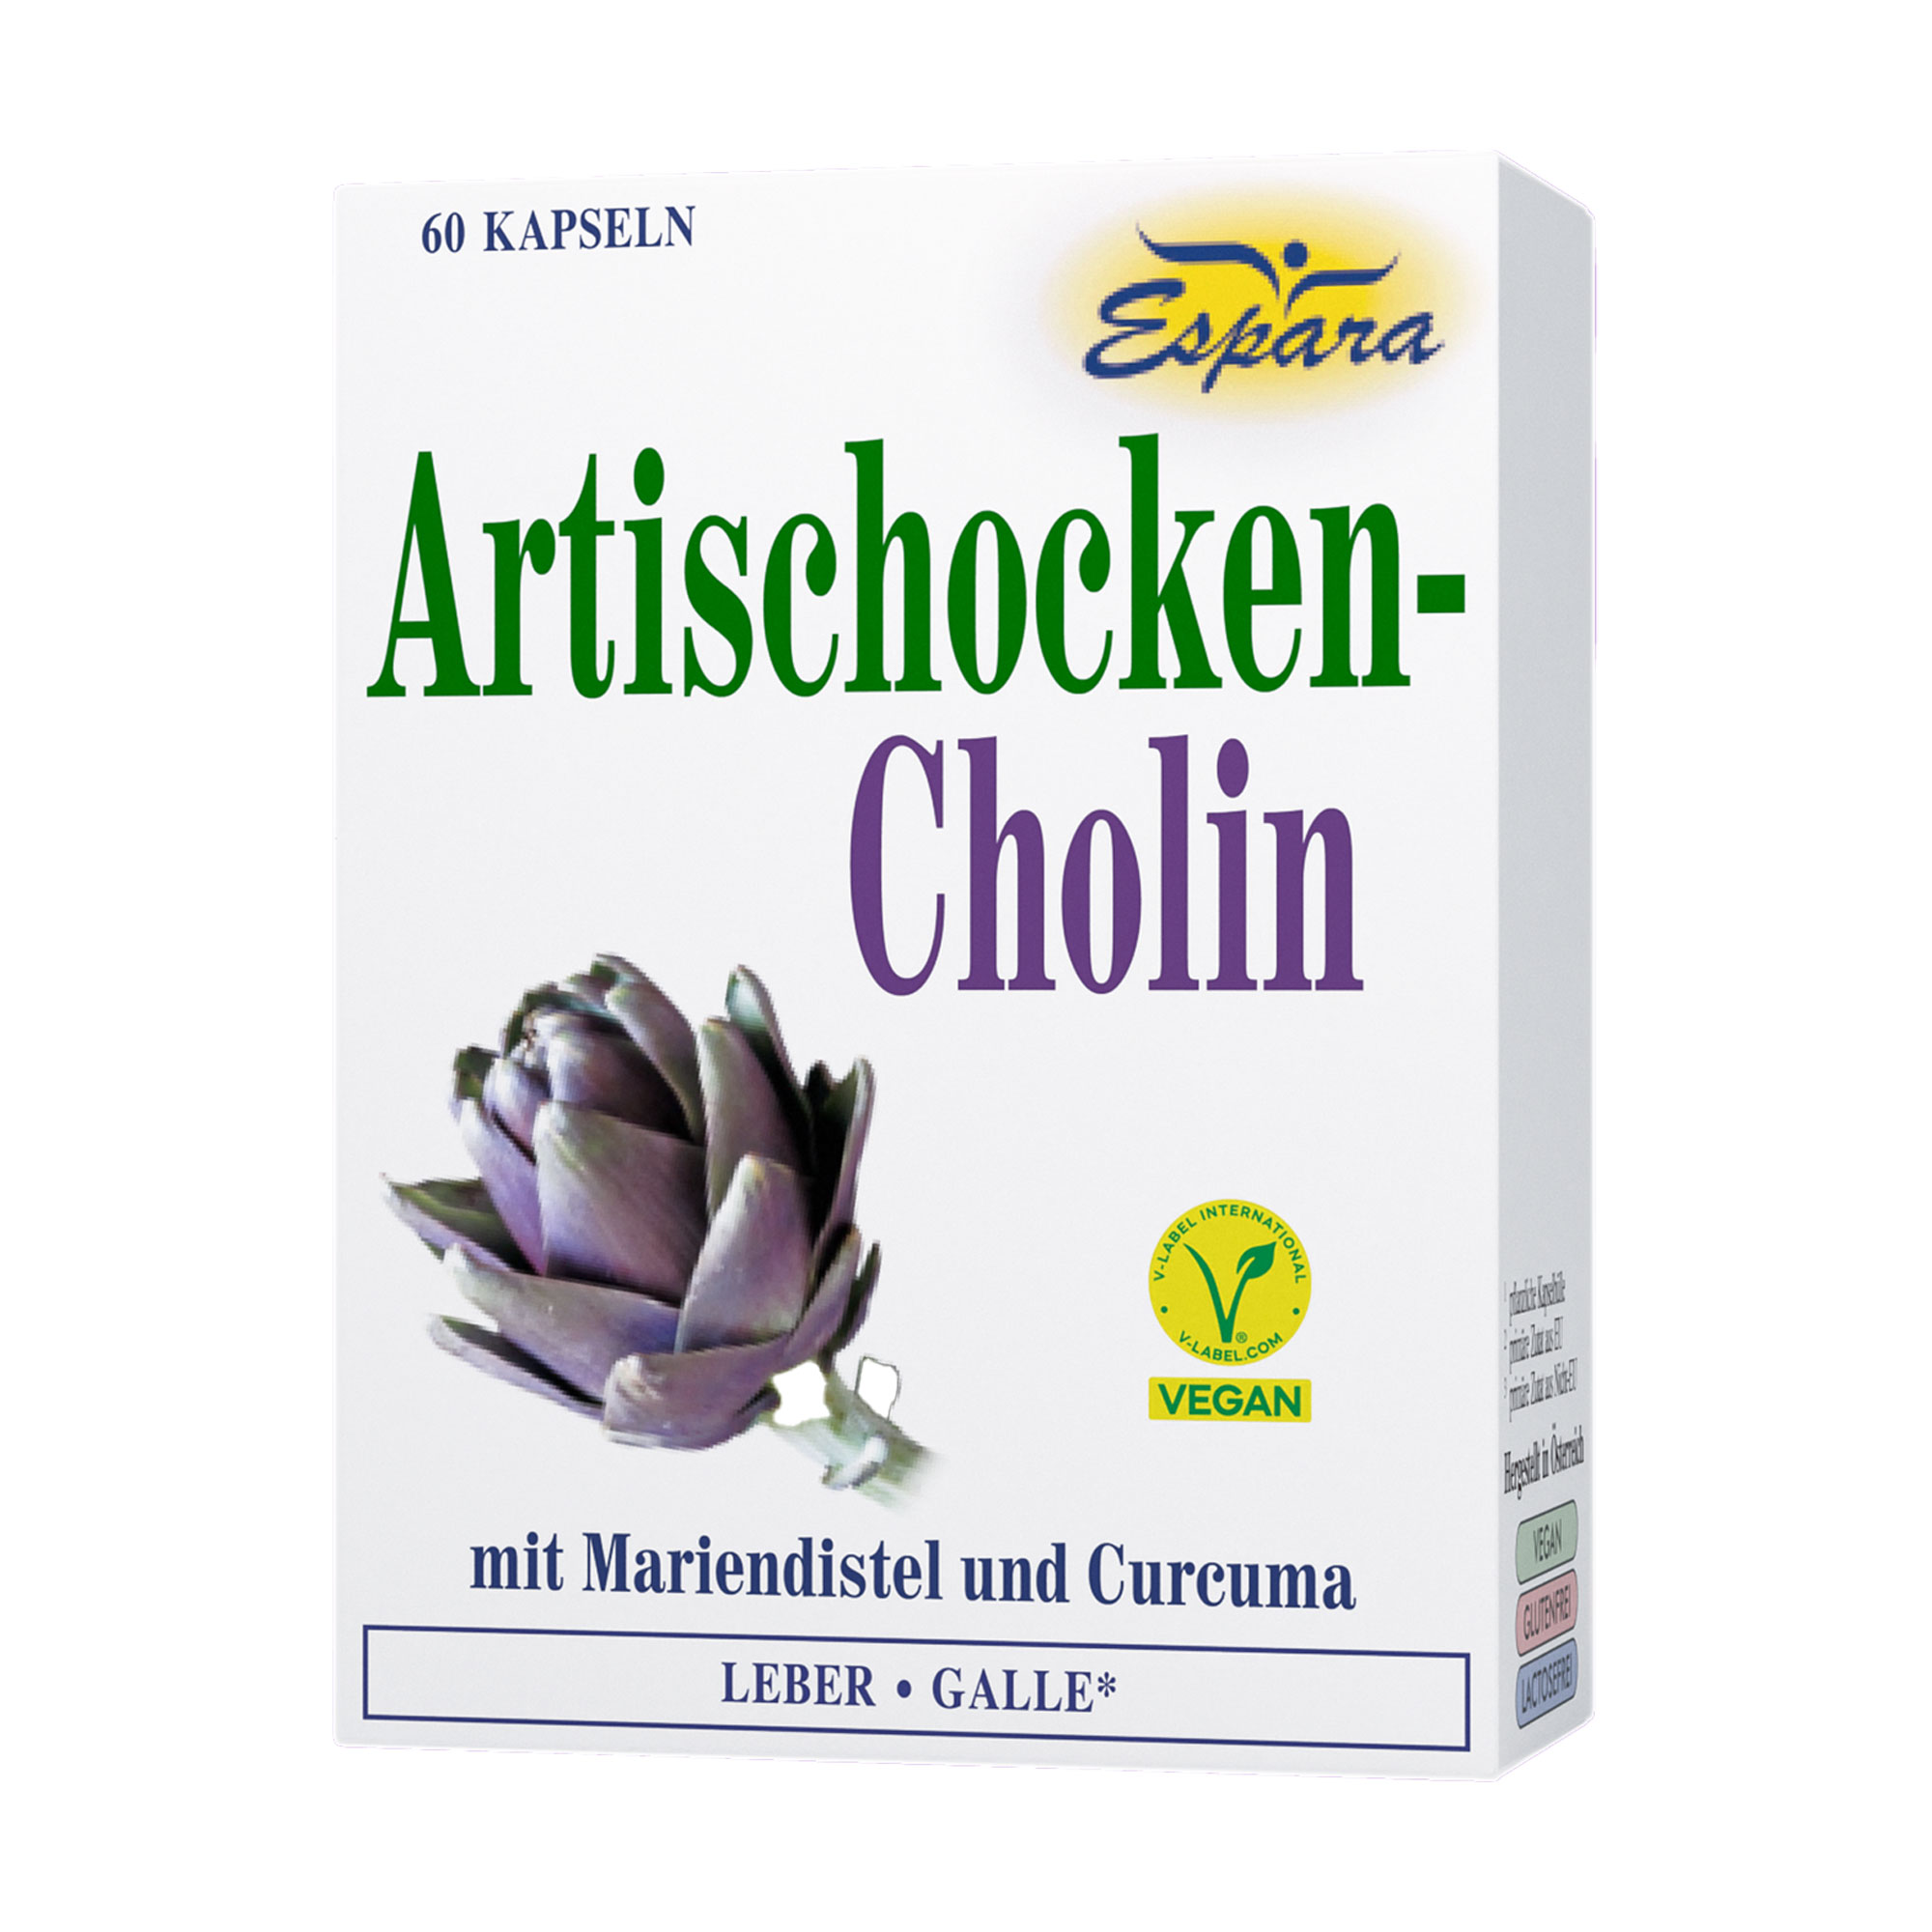 Nahrungsergänzungsmittel mit Cholin in Kombination mit Artischocke, Mariendistel und Curcuma.